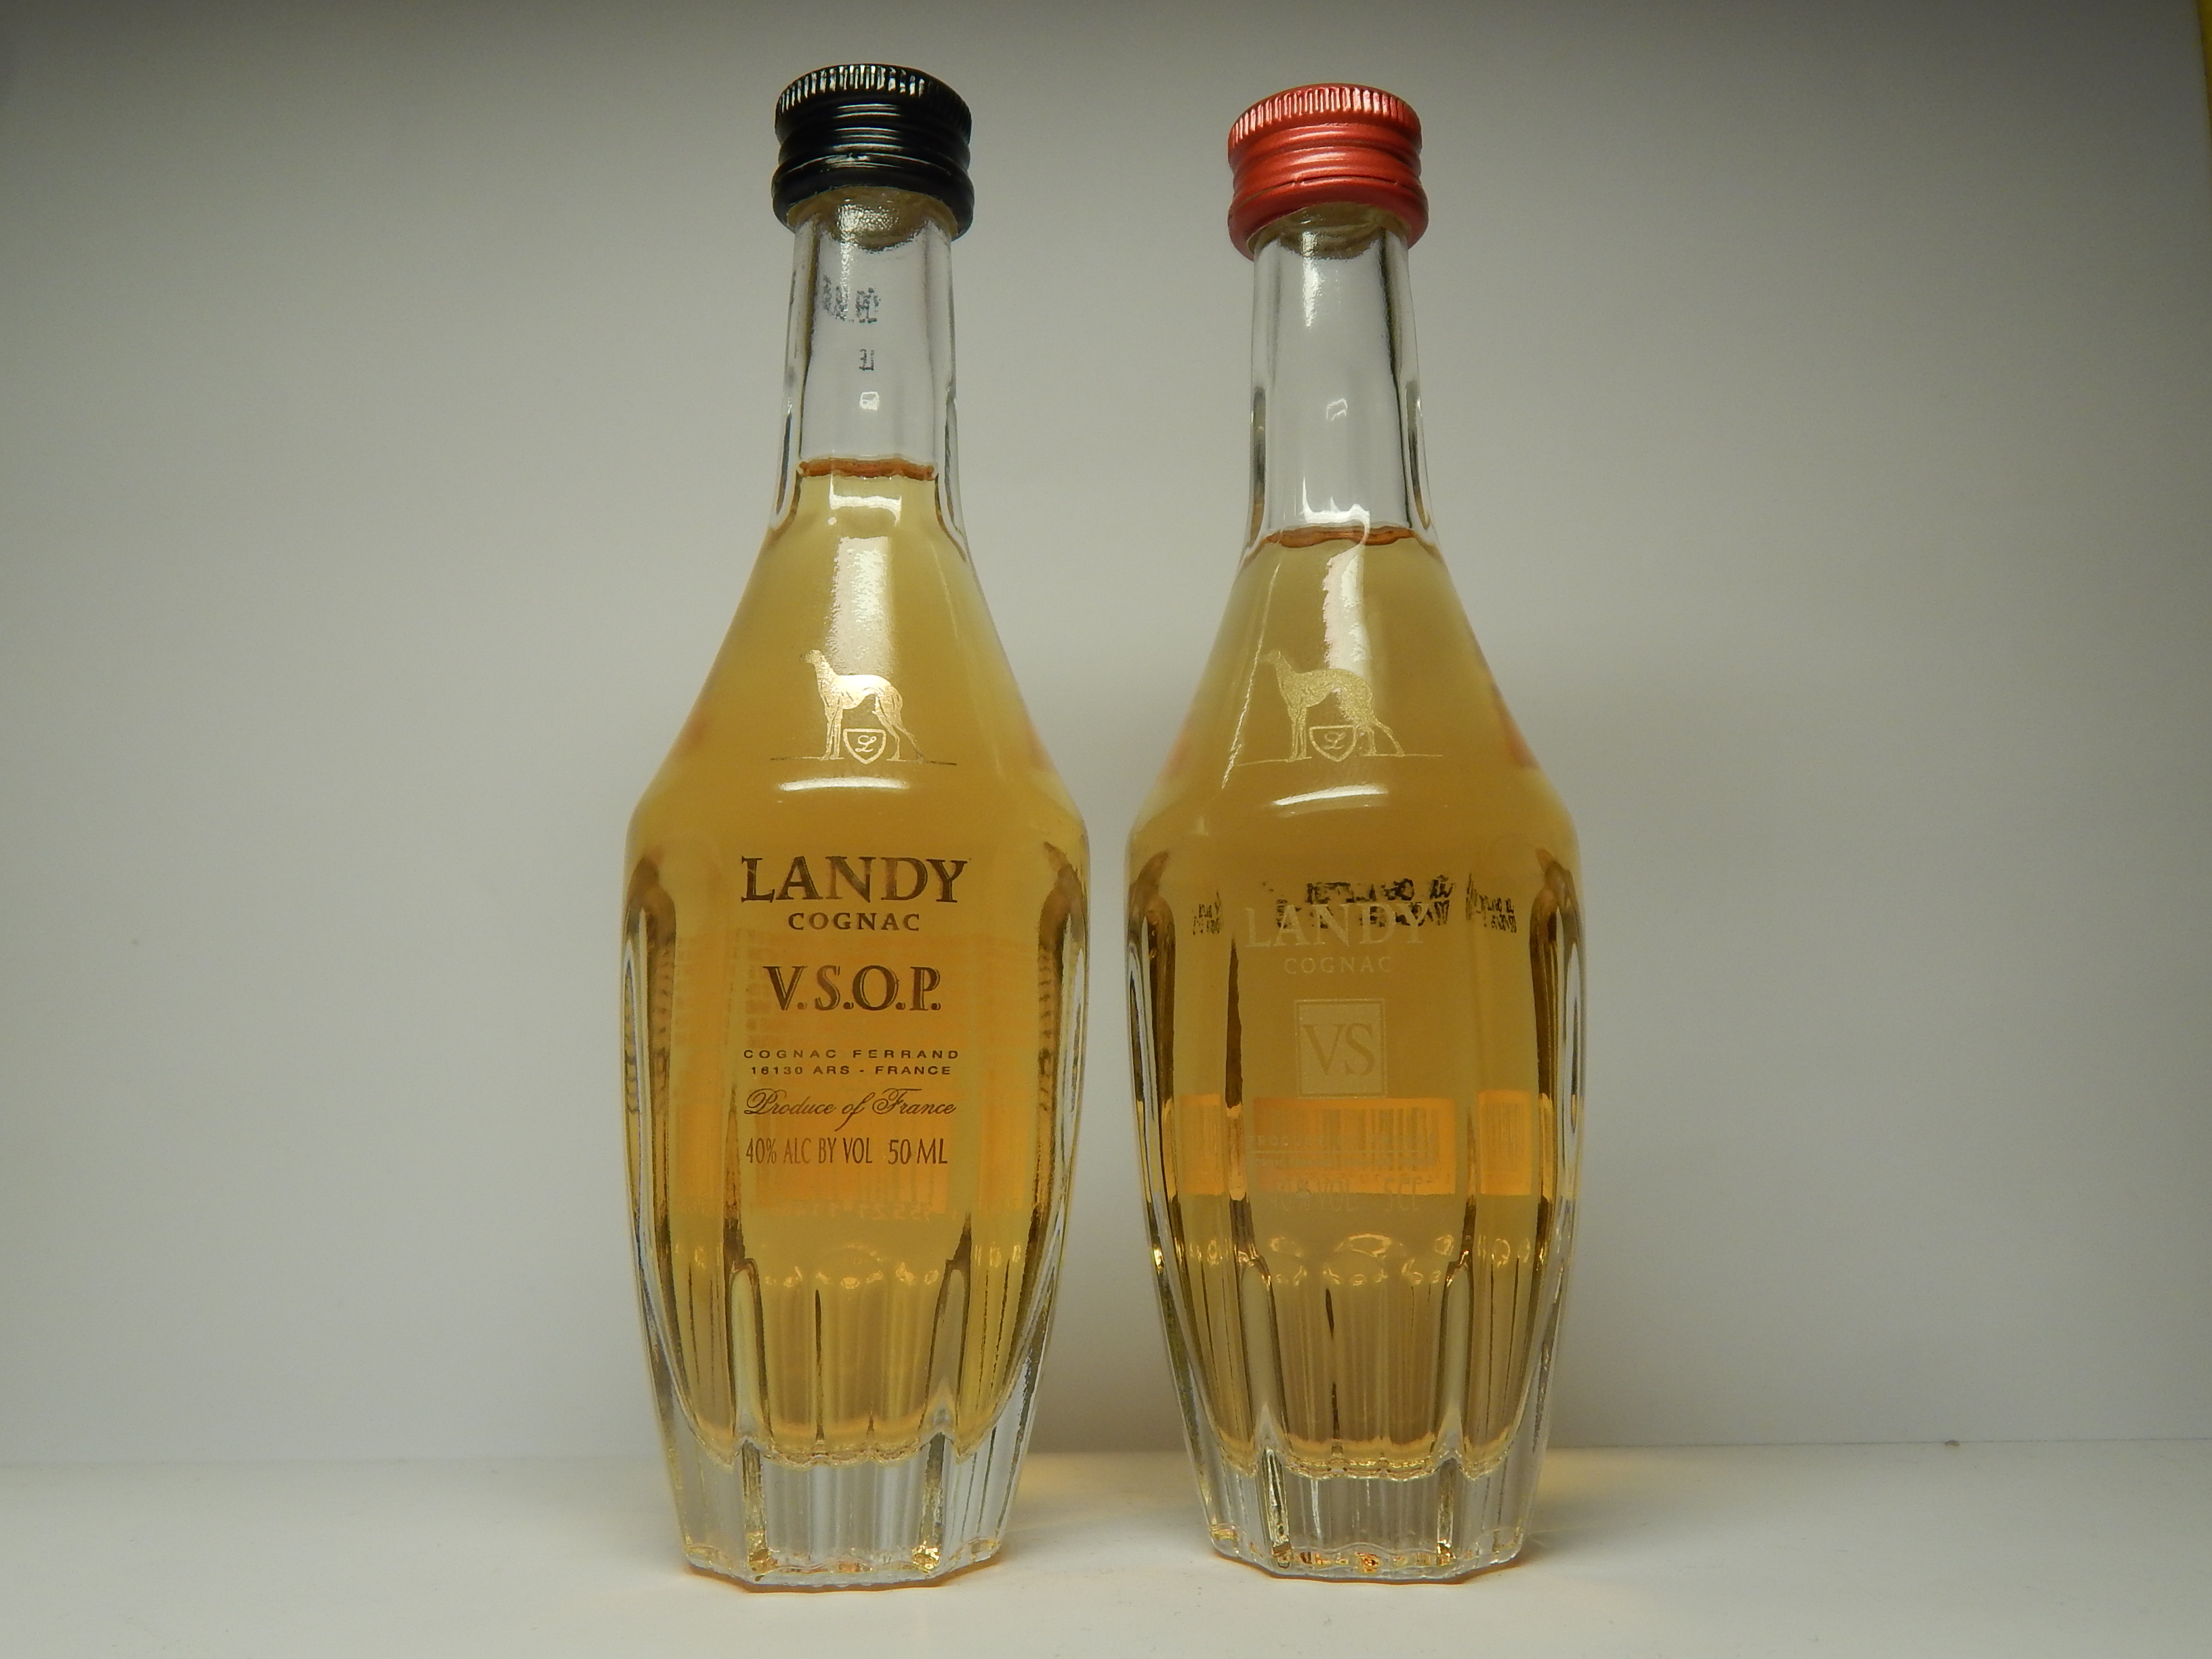 LANDY V.S.O.P. - VS Cognac